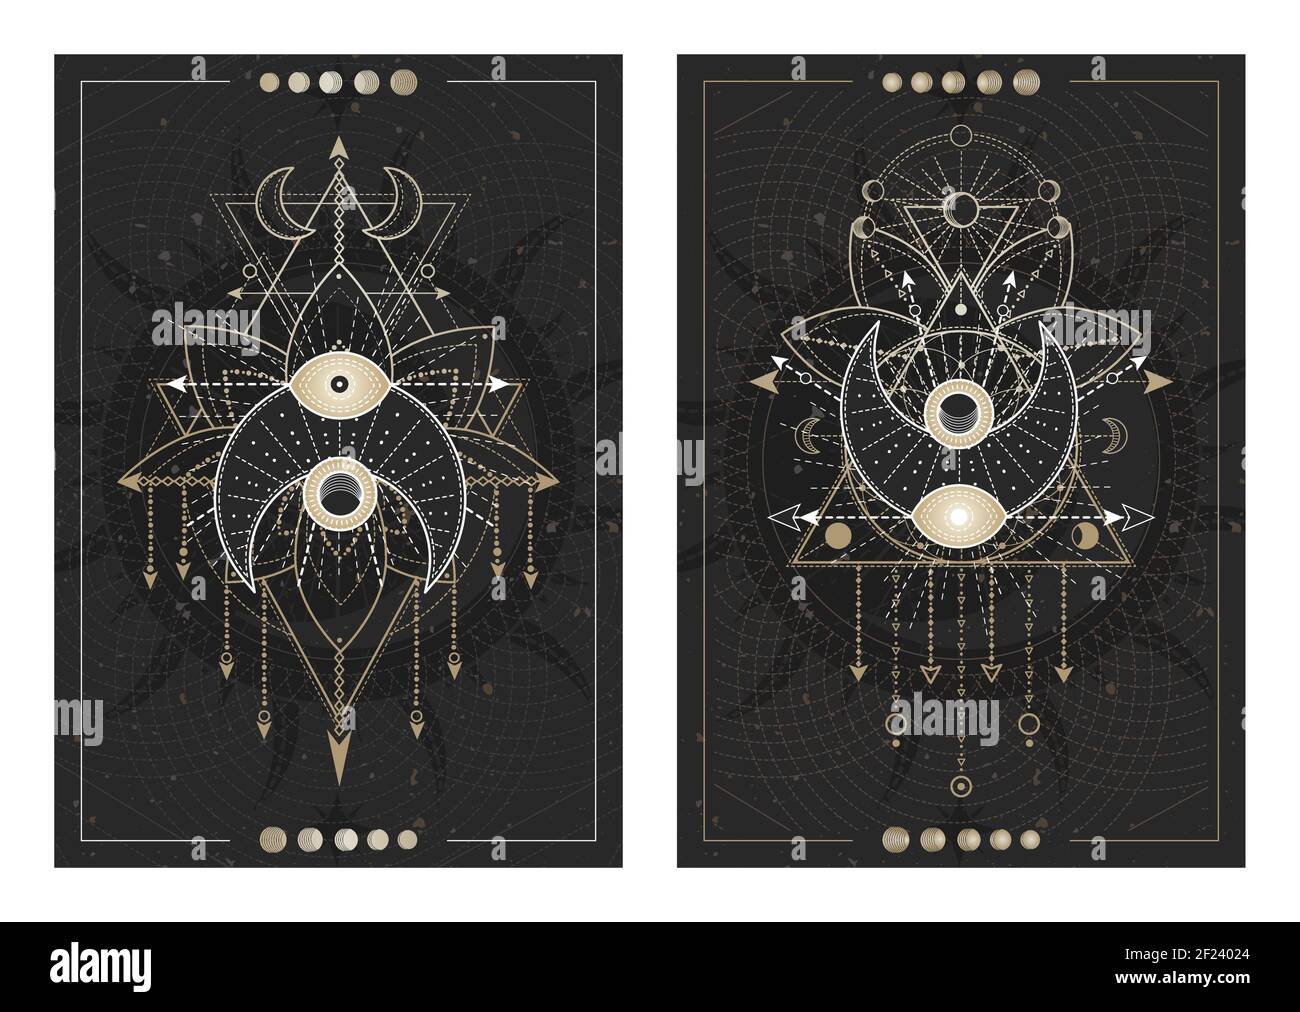 Vektor dunkle Illustrationen mit heiligen Geometriesymbolen, Grunge Texturen und Rahmen. Bilder in schwarz, weiß und Gold. Stock Vektor